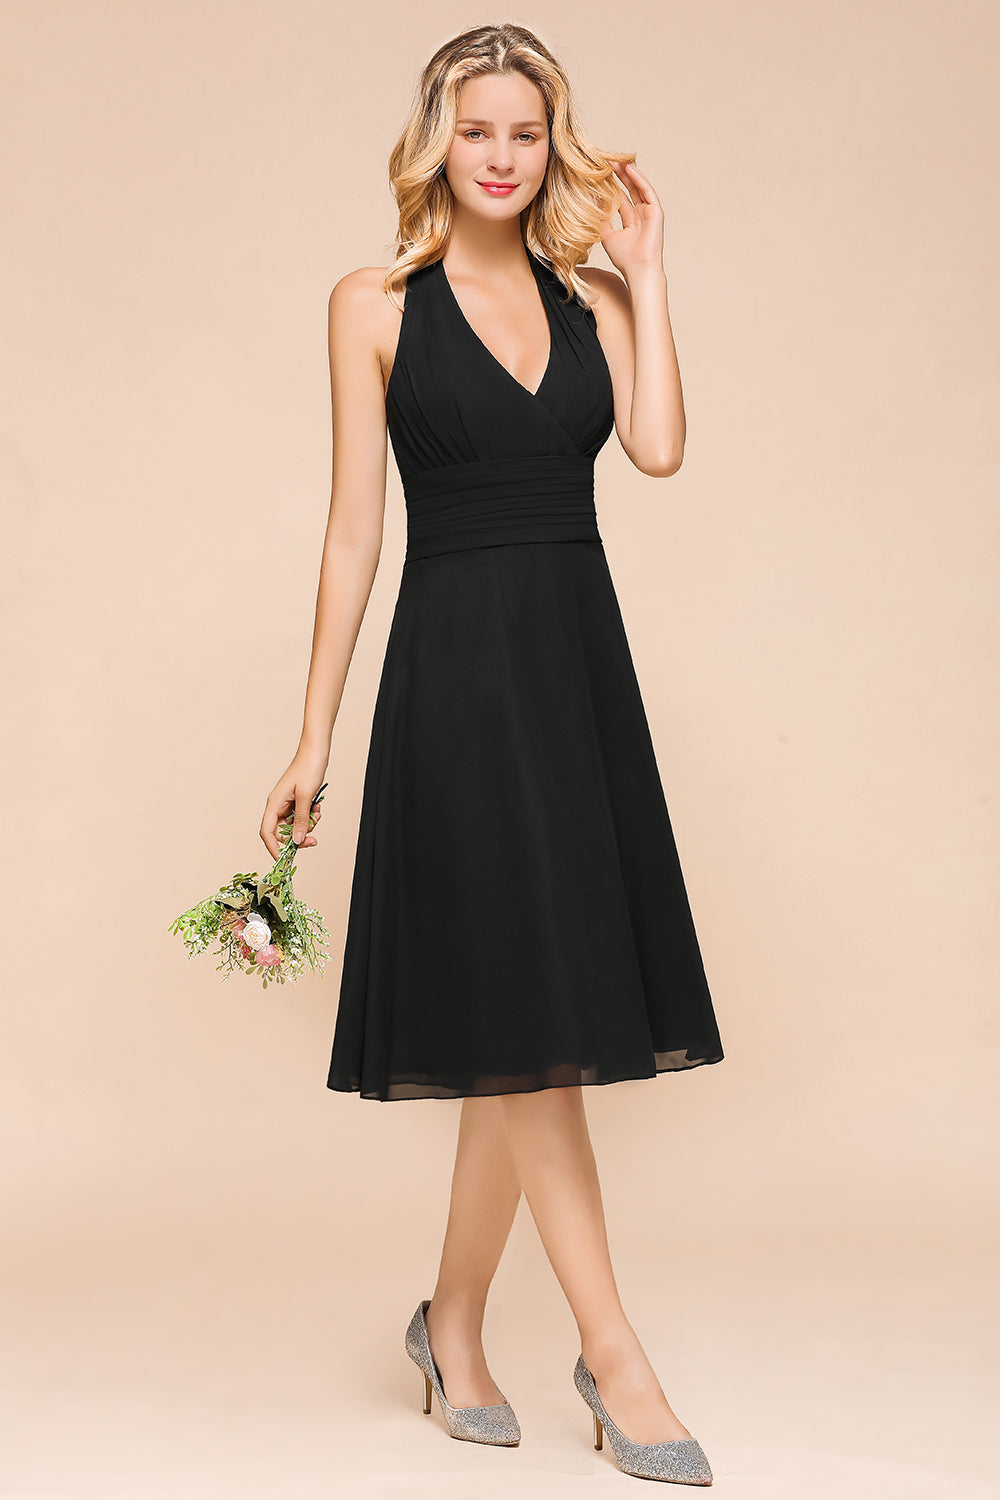 Load image into Gallery viewer, Affordable Halter V-Neck Black Short Bridesmaid Dresses Online-27dress
